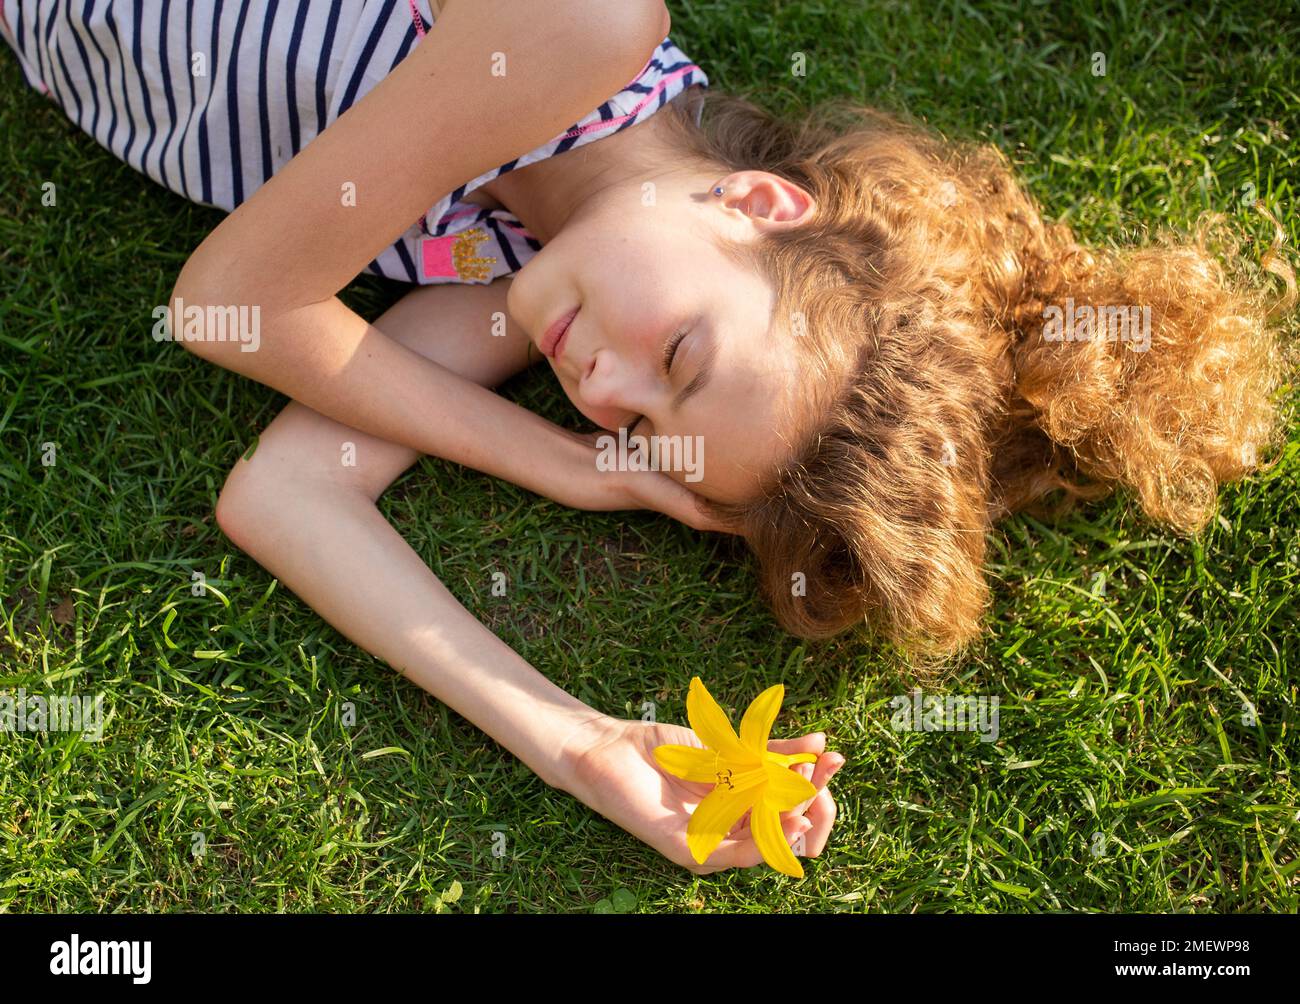 Ein süßes Mädchen mit 11-12 Jahren schläft an einem sonnigen Tag auf grünem Gras. Erholen Sie sich im Sommer in der Natur. Tag der Erde. Unachtsamkeit, Harmonie, Idylle, Gelassenheit. Sunba Stockfoto